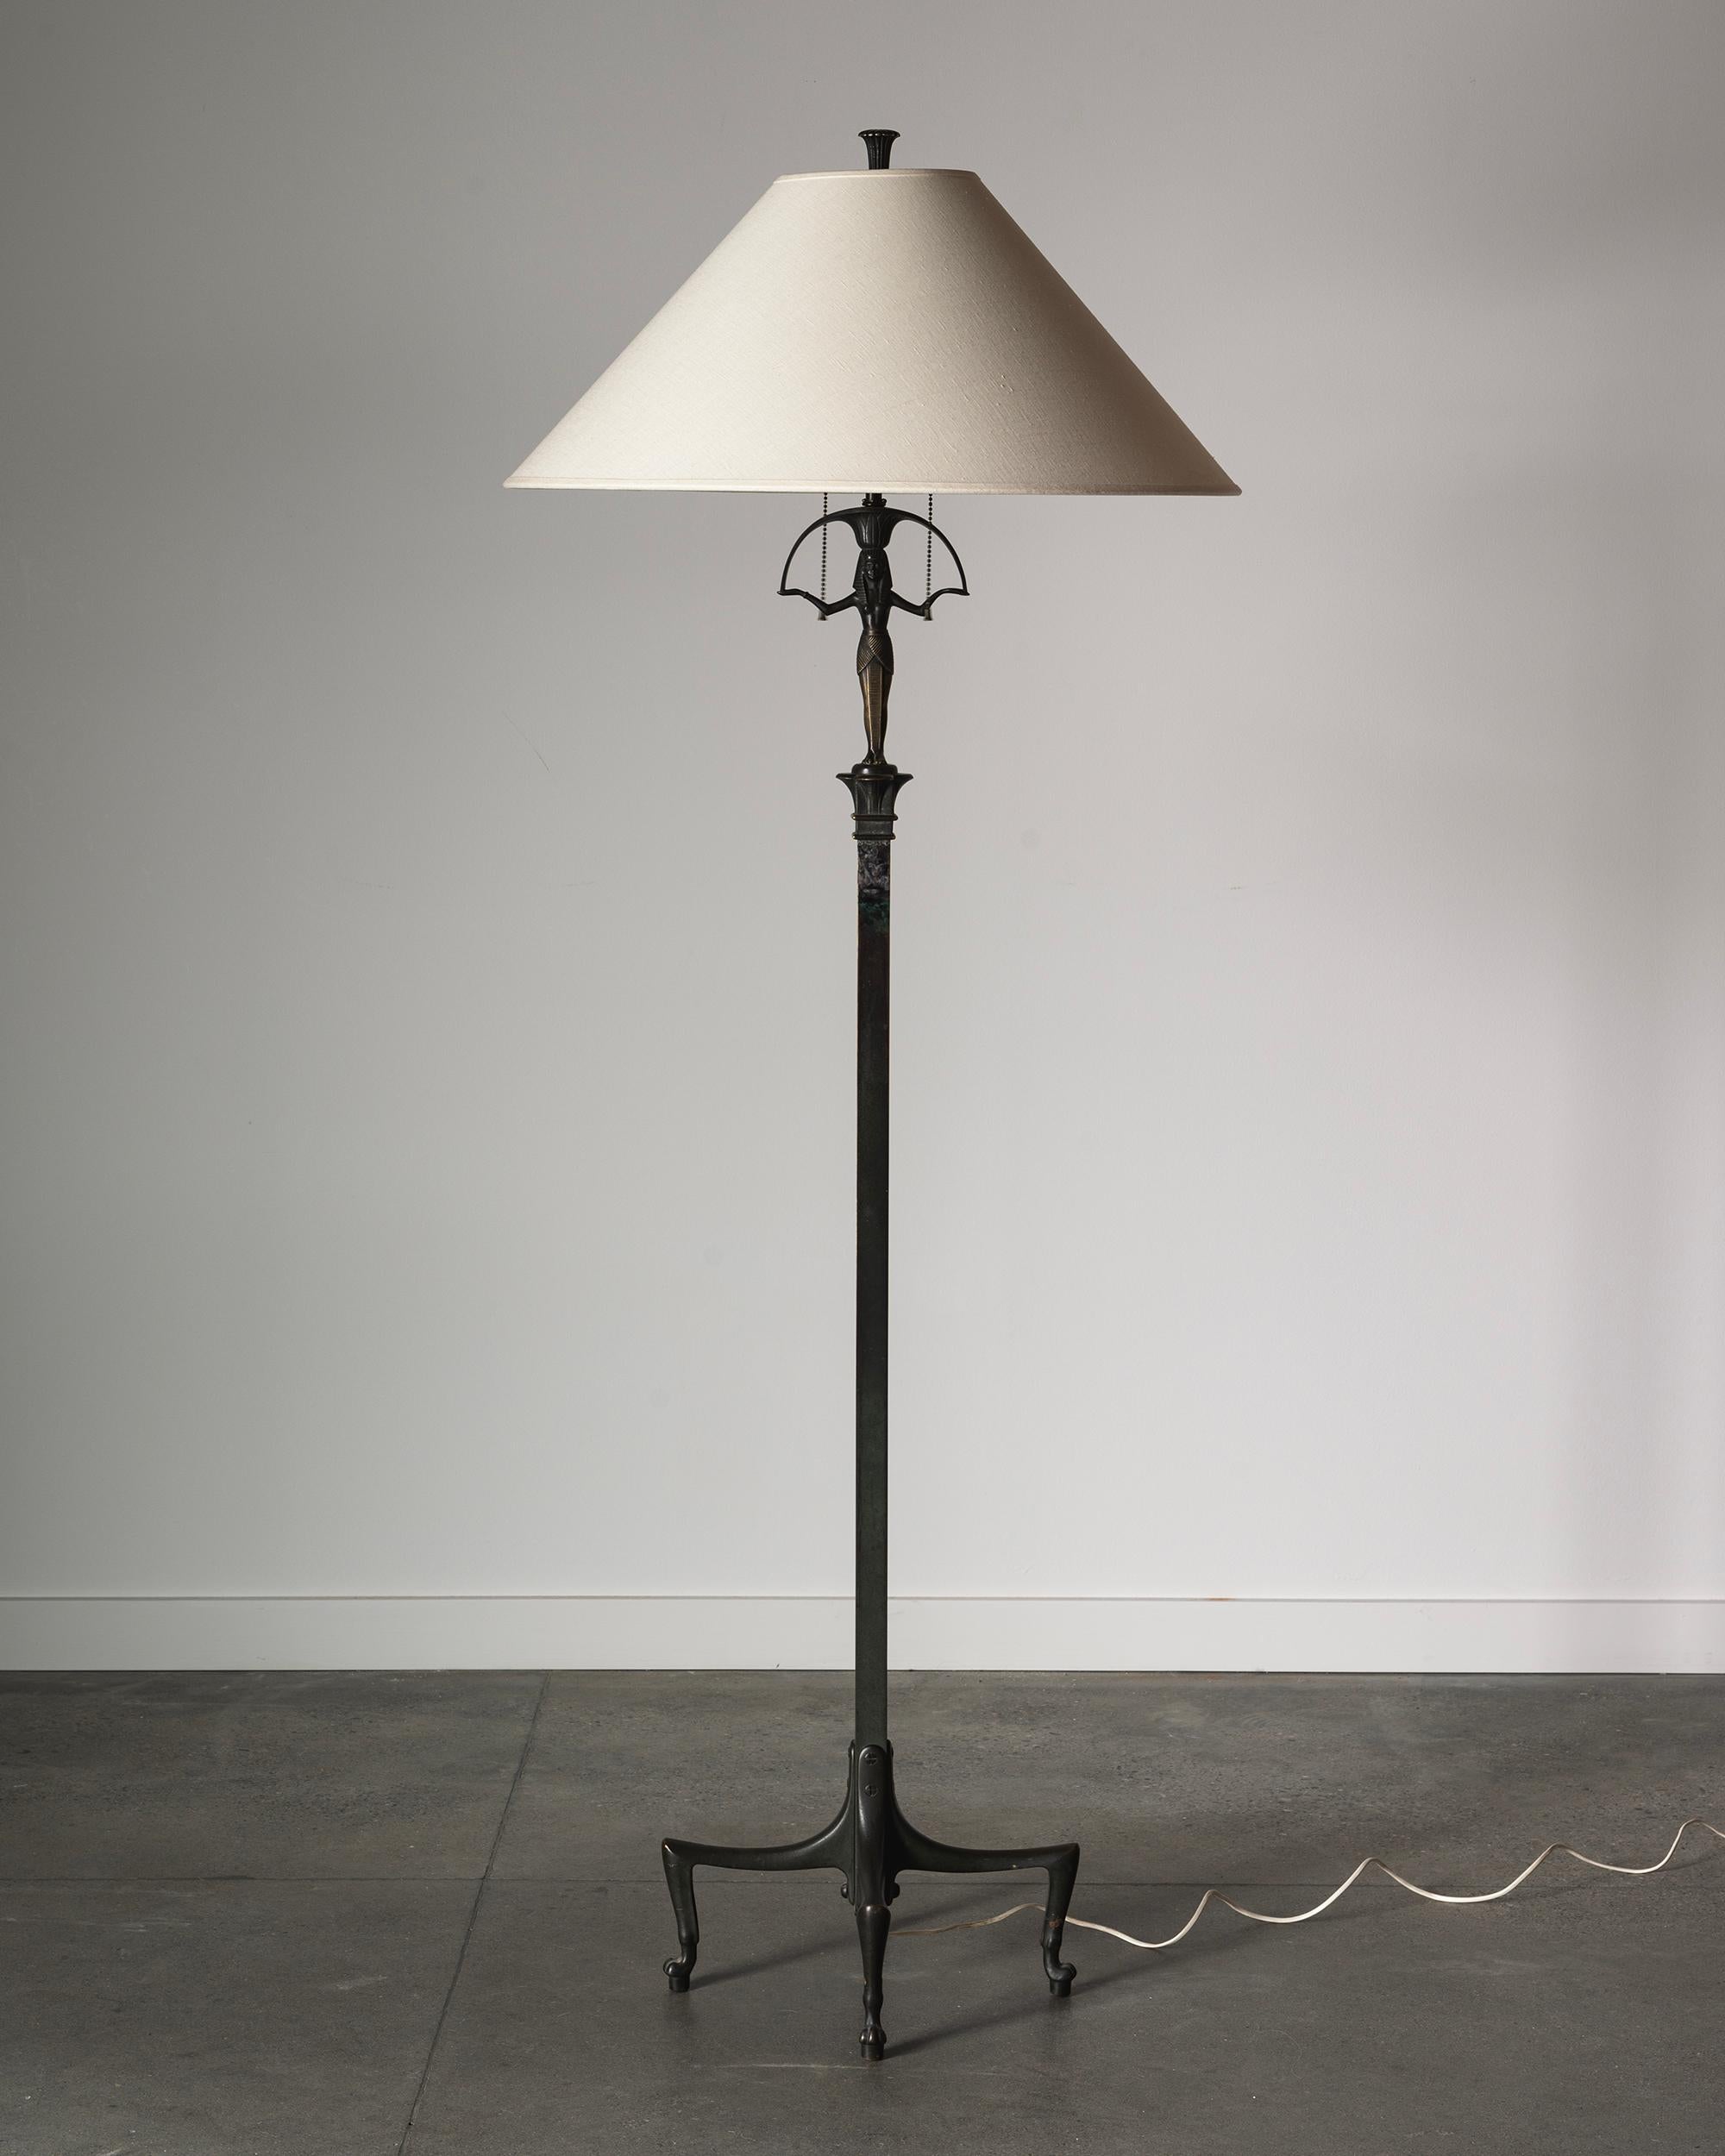 Exceptionnel lampadaire Art déco (Swedish Grace) en bronze du début du 20e siècle dans le goût égyptien. ca 1920 - 30s Suède. 